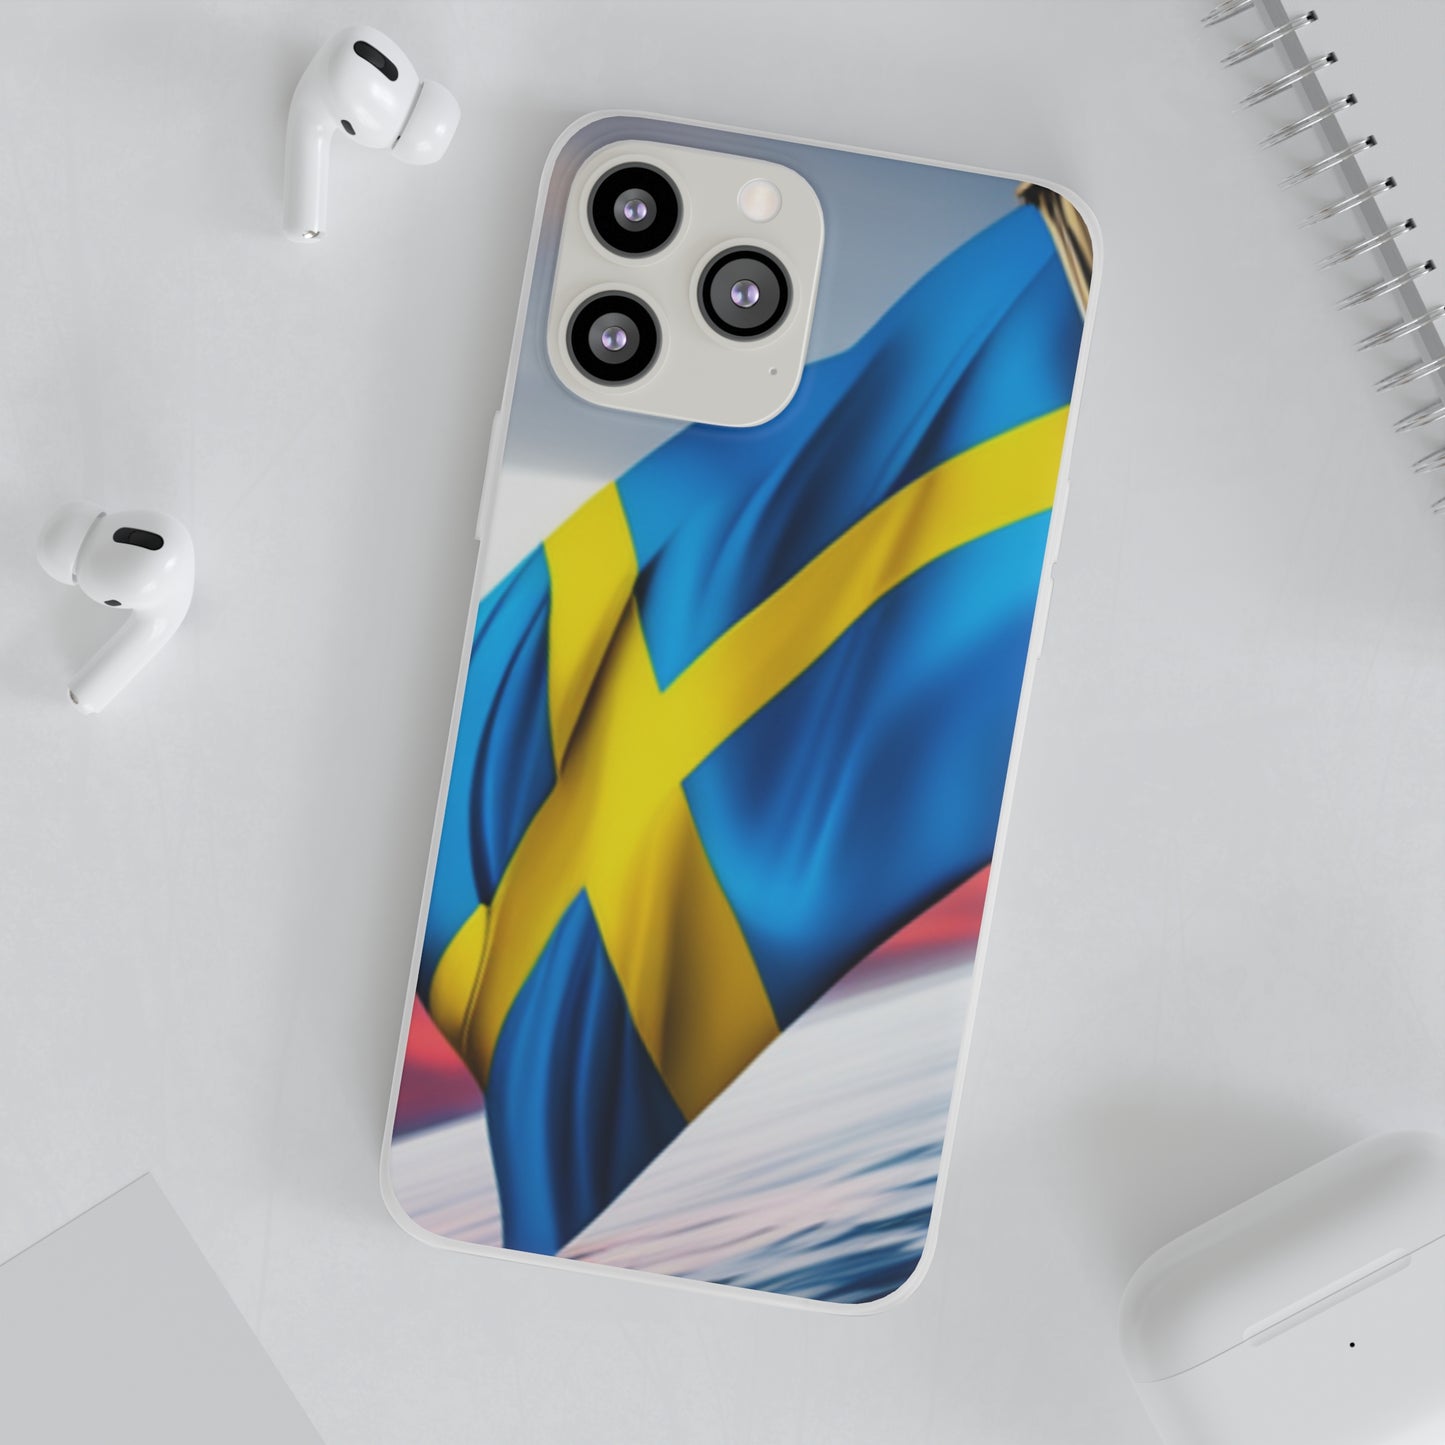 Flexi Case [Sweden]